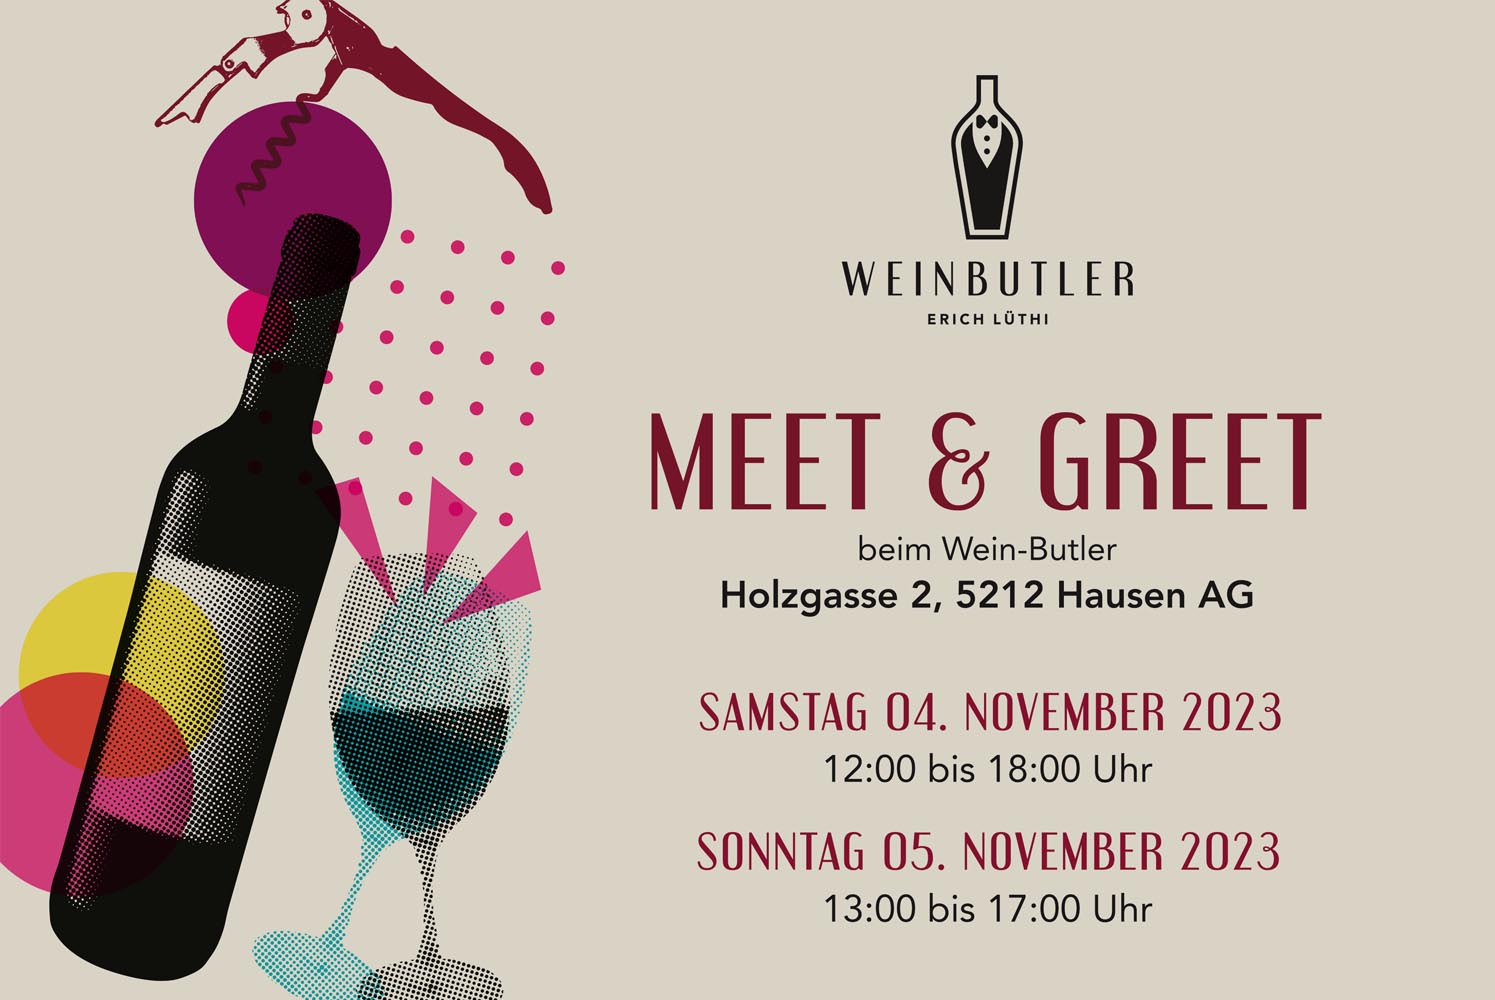 Meet & Greet 2023 beim Wein-Butler - Meet & Greet 2023 beim Wein-Butler